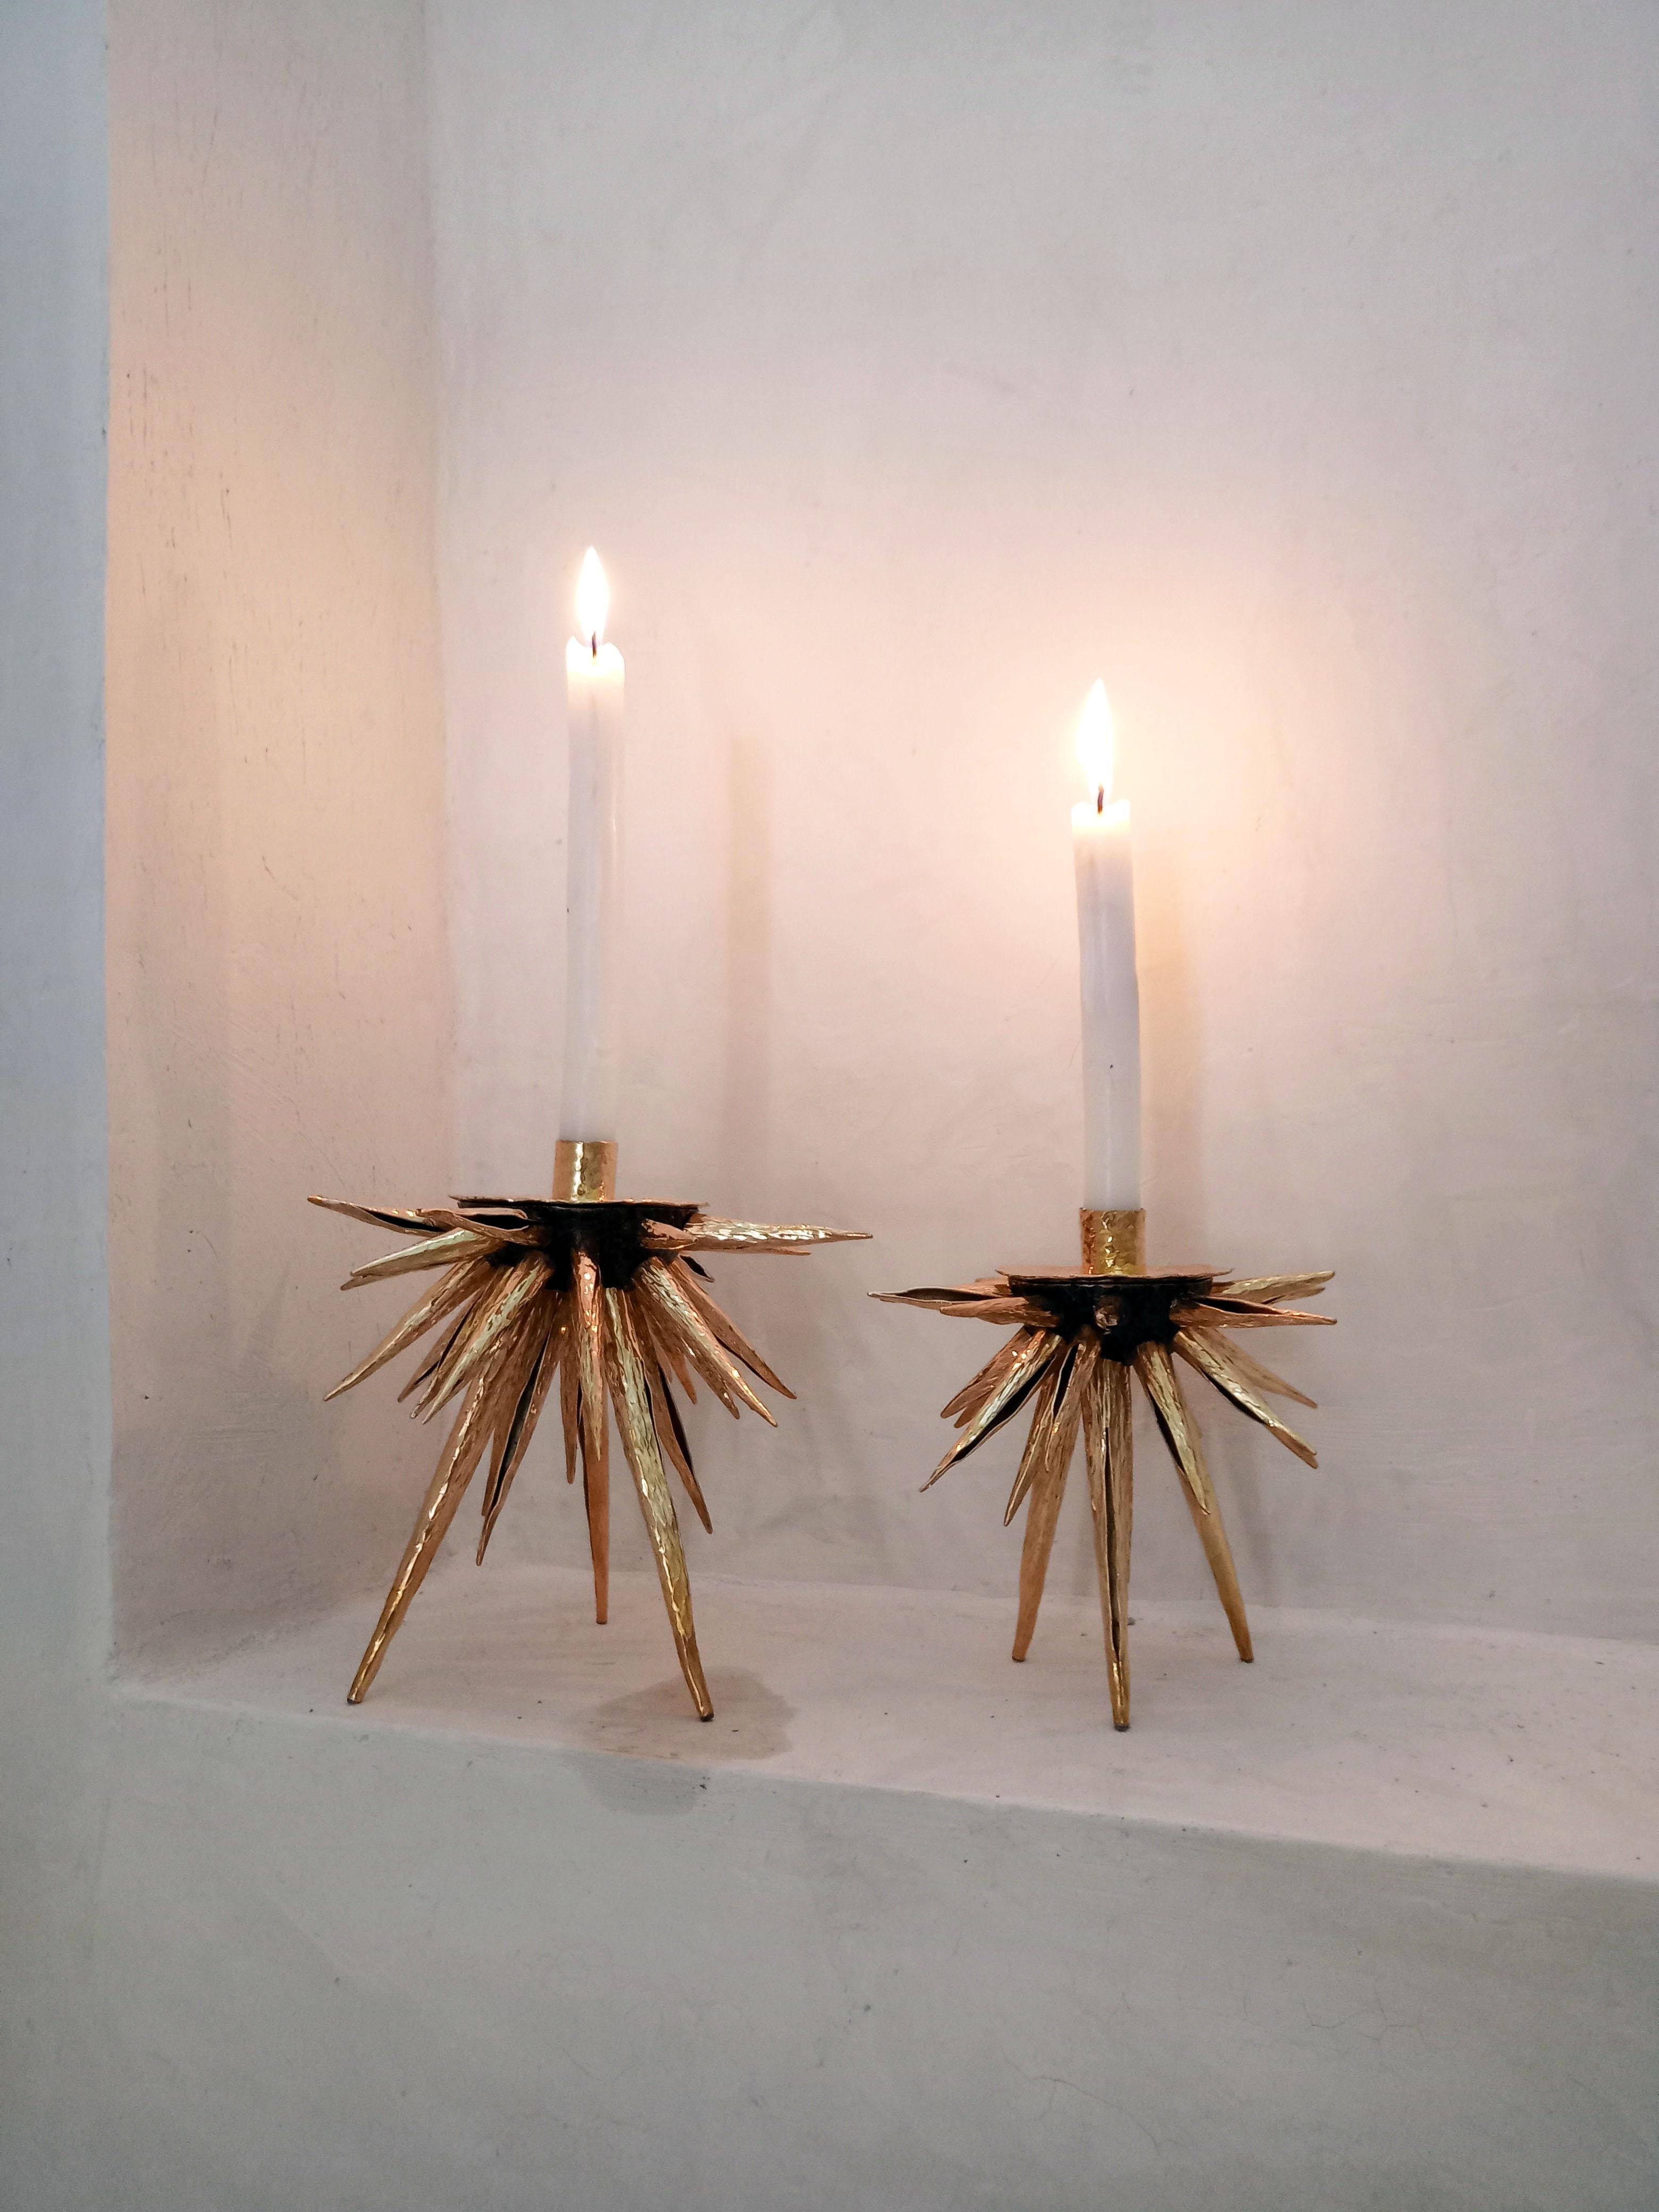 Dieser von Cristina Romo entworfene, von den wunderbaren Formen der Meeresbewohner inspirierte Seeigel-Kerzenhalter wird aus Tumbaga, einer Legierung aus Kupfer und Zink, hergestellt. Jeder einzelne Stachel wird in den Werkstätten von ROMOHERRERA in